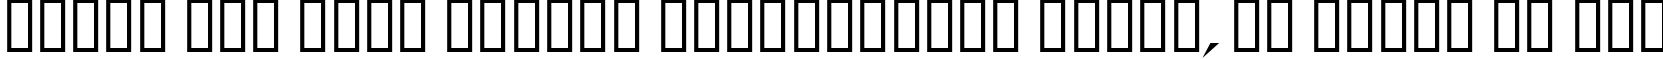 Пример написания шрифтом Schrill AOE Oblique текста на русском